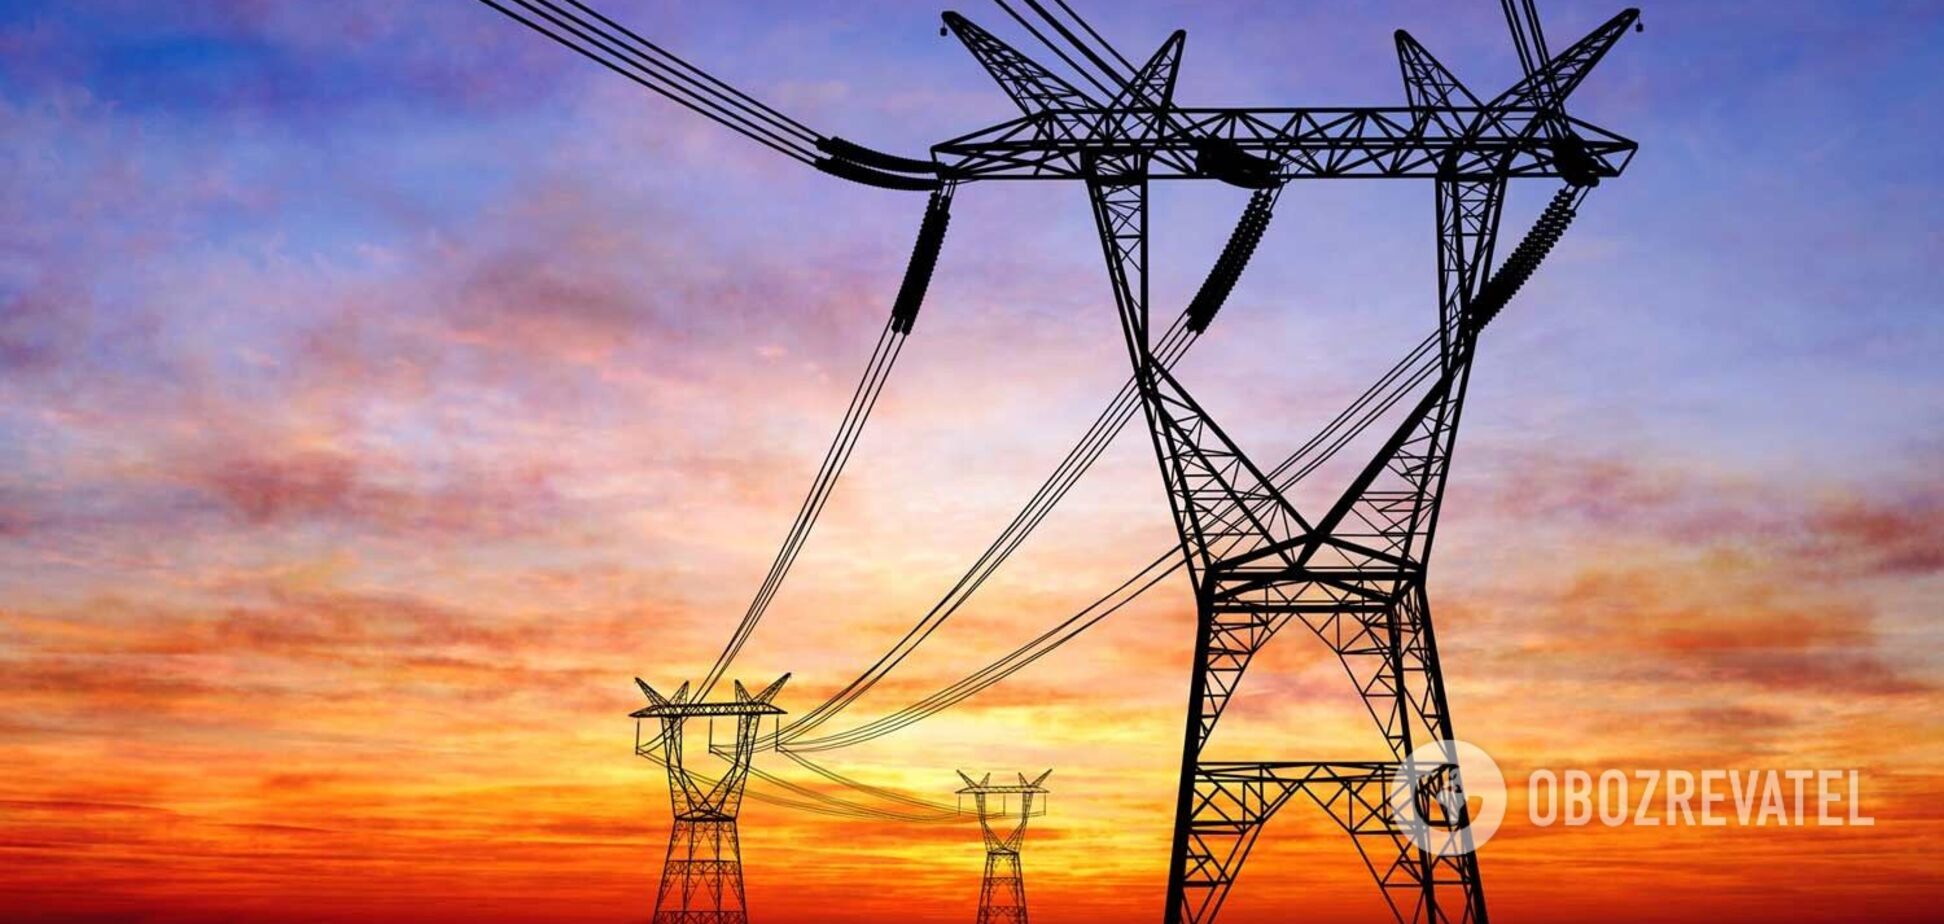 Міненерго хоче зменшити витрати на ремонти електромереж на 60% заради зниження тарифу – експерт 'Центру Разумкова'